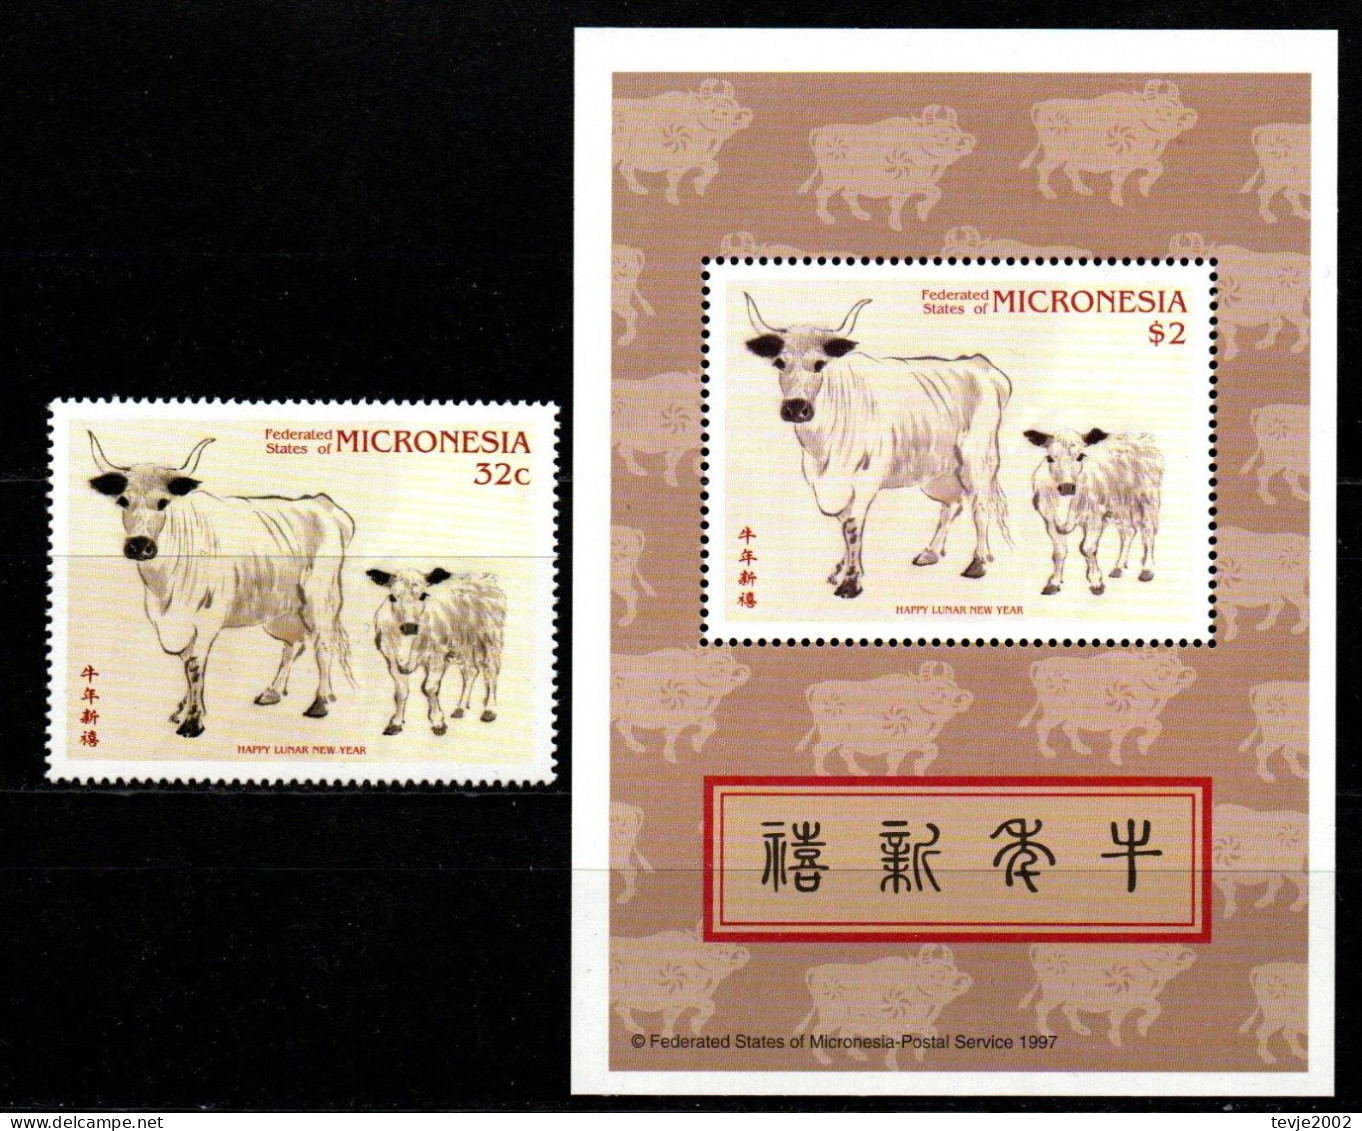 Mikronesien 1997 - Mi.Nr. 529 + Block 19 - Postfrisch MNH - Tiere Animals Neujahr New Year - Chinese New Year